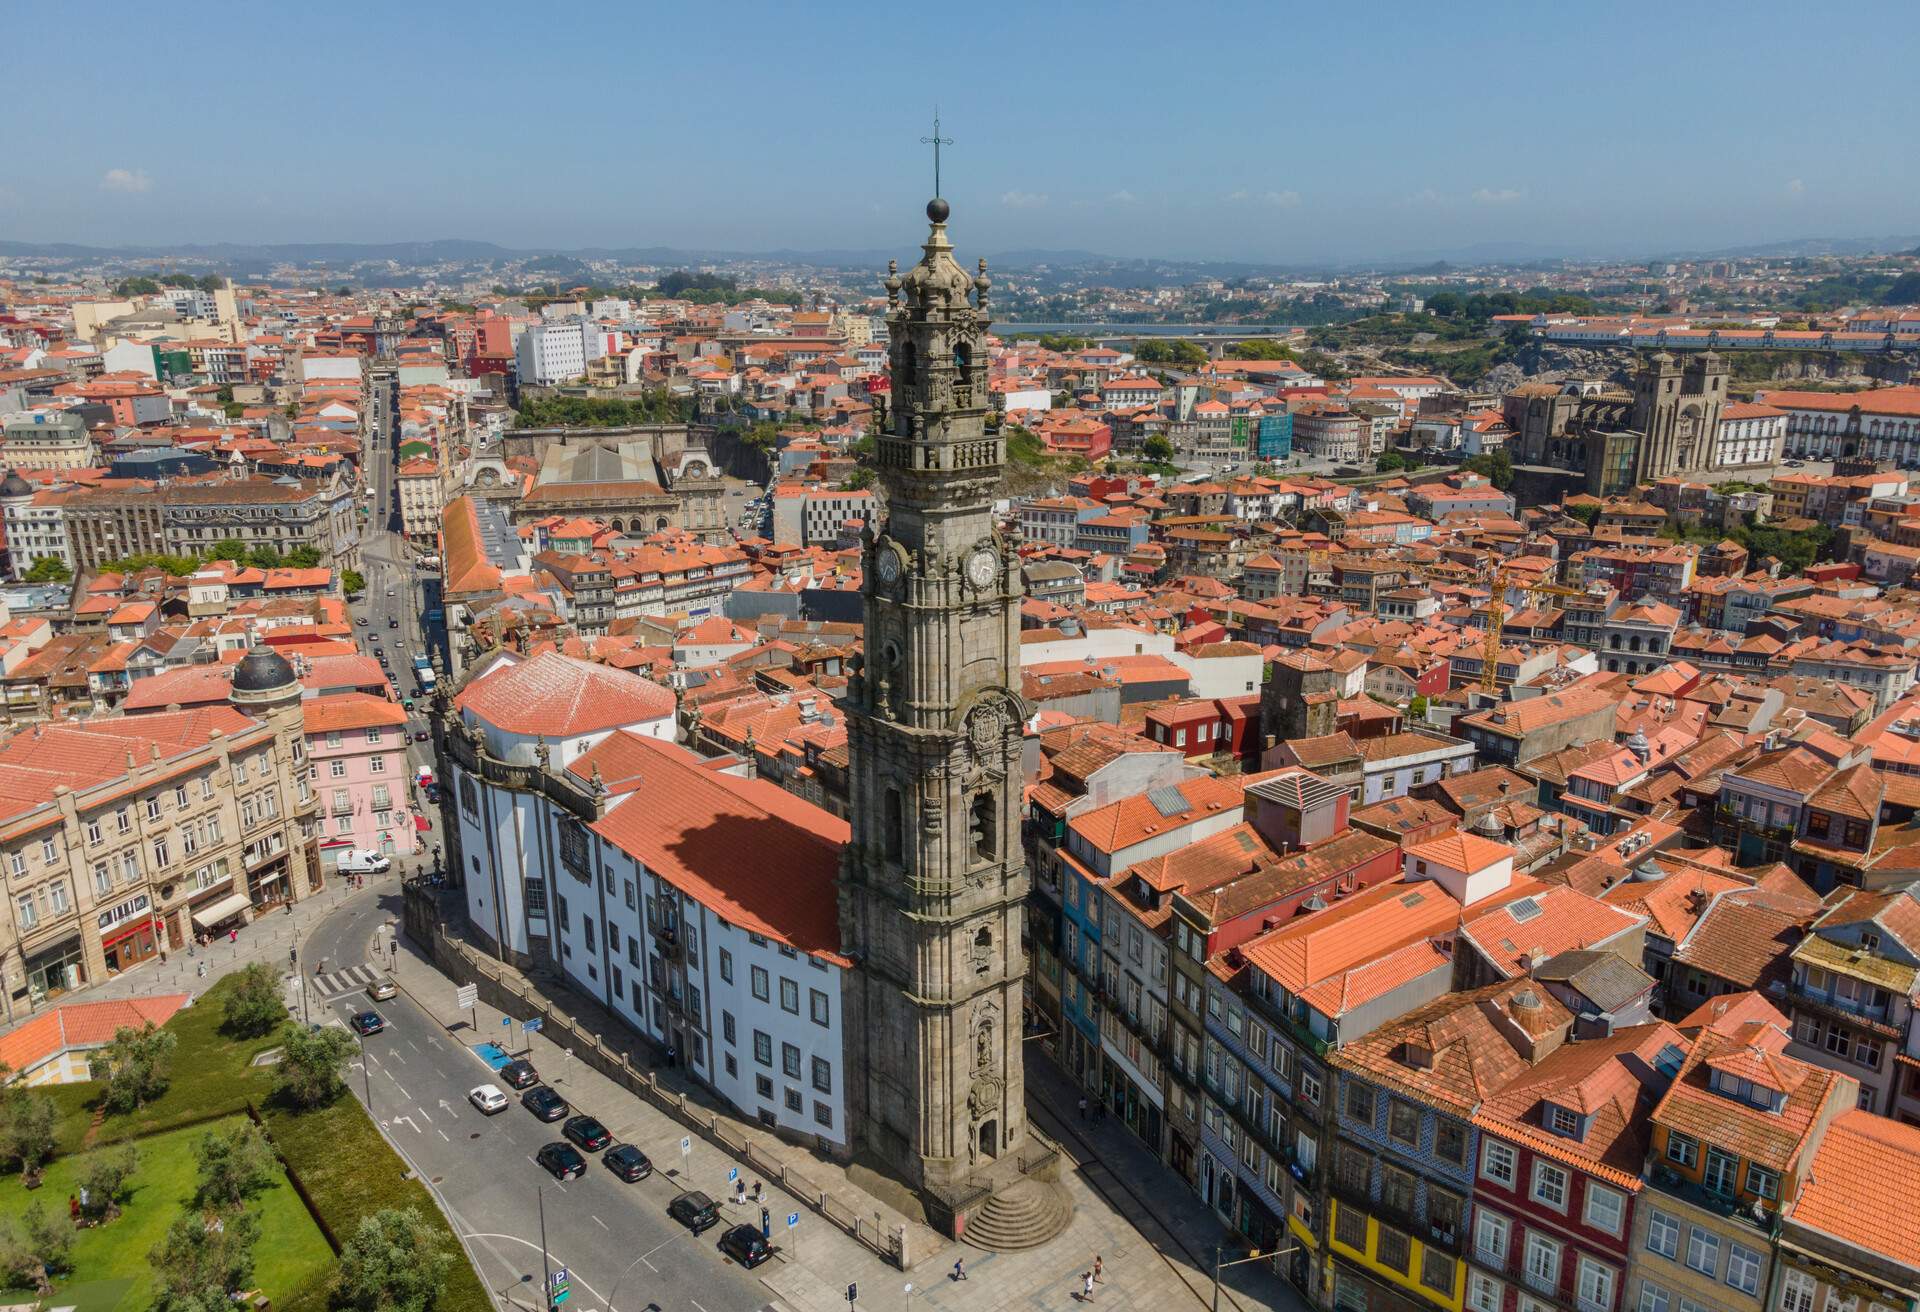 Clérigos Tower in Porto, Portugal